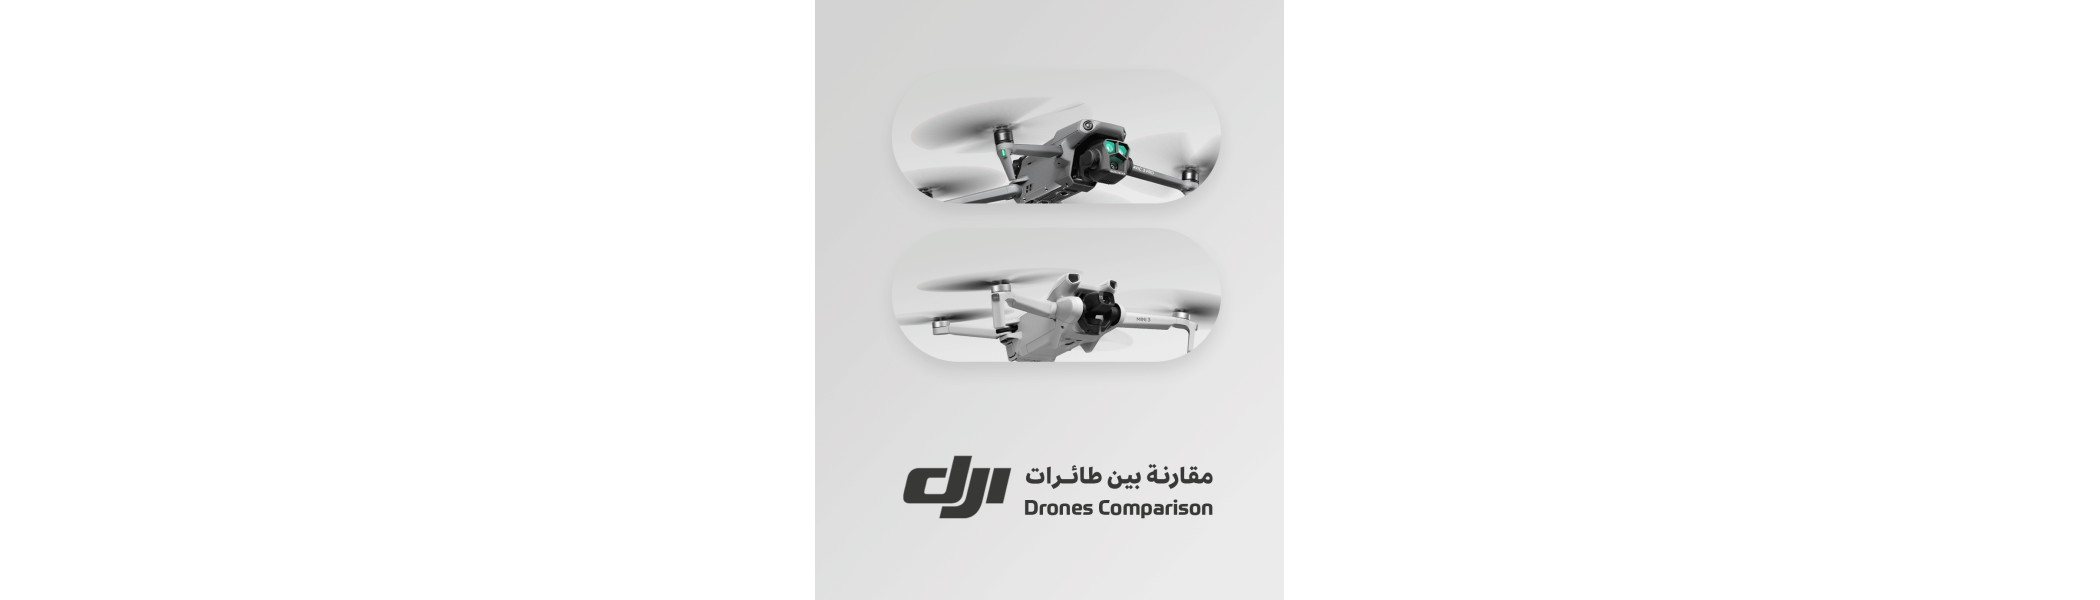    DJI Drones Comparison